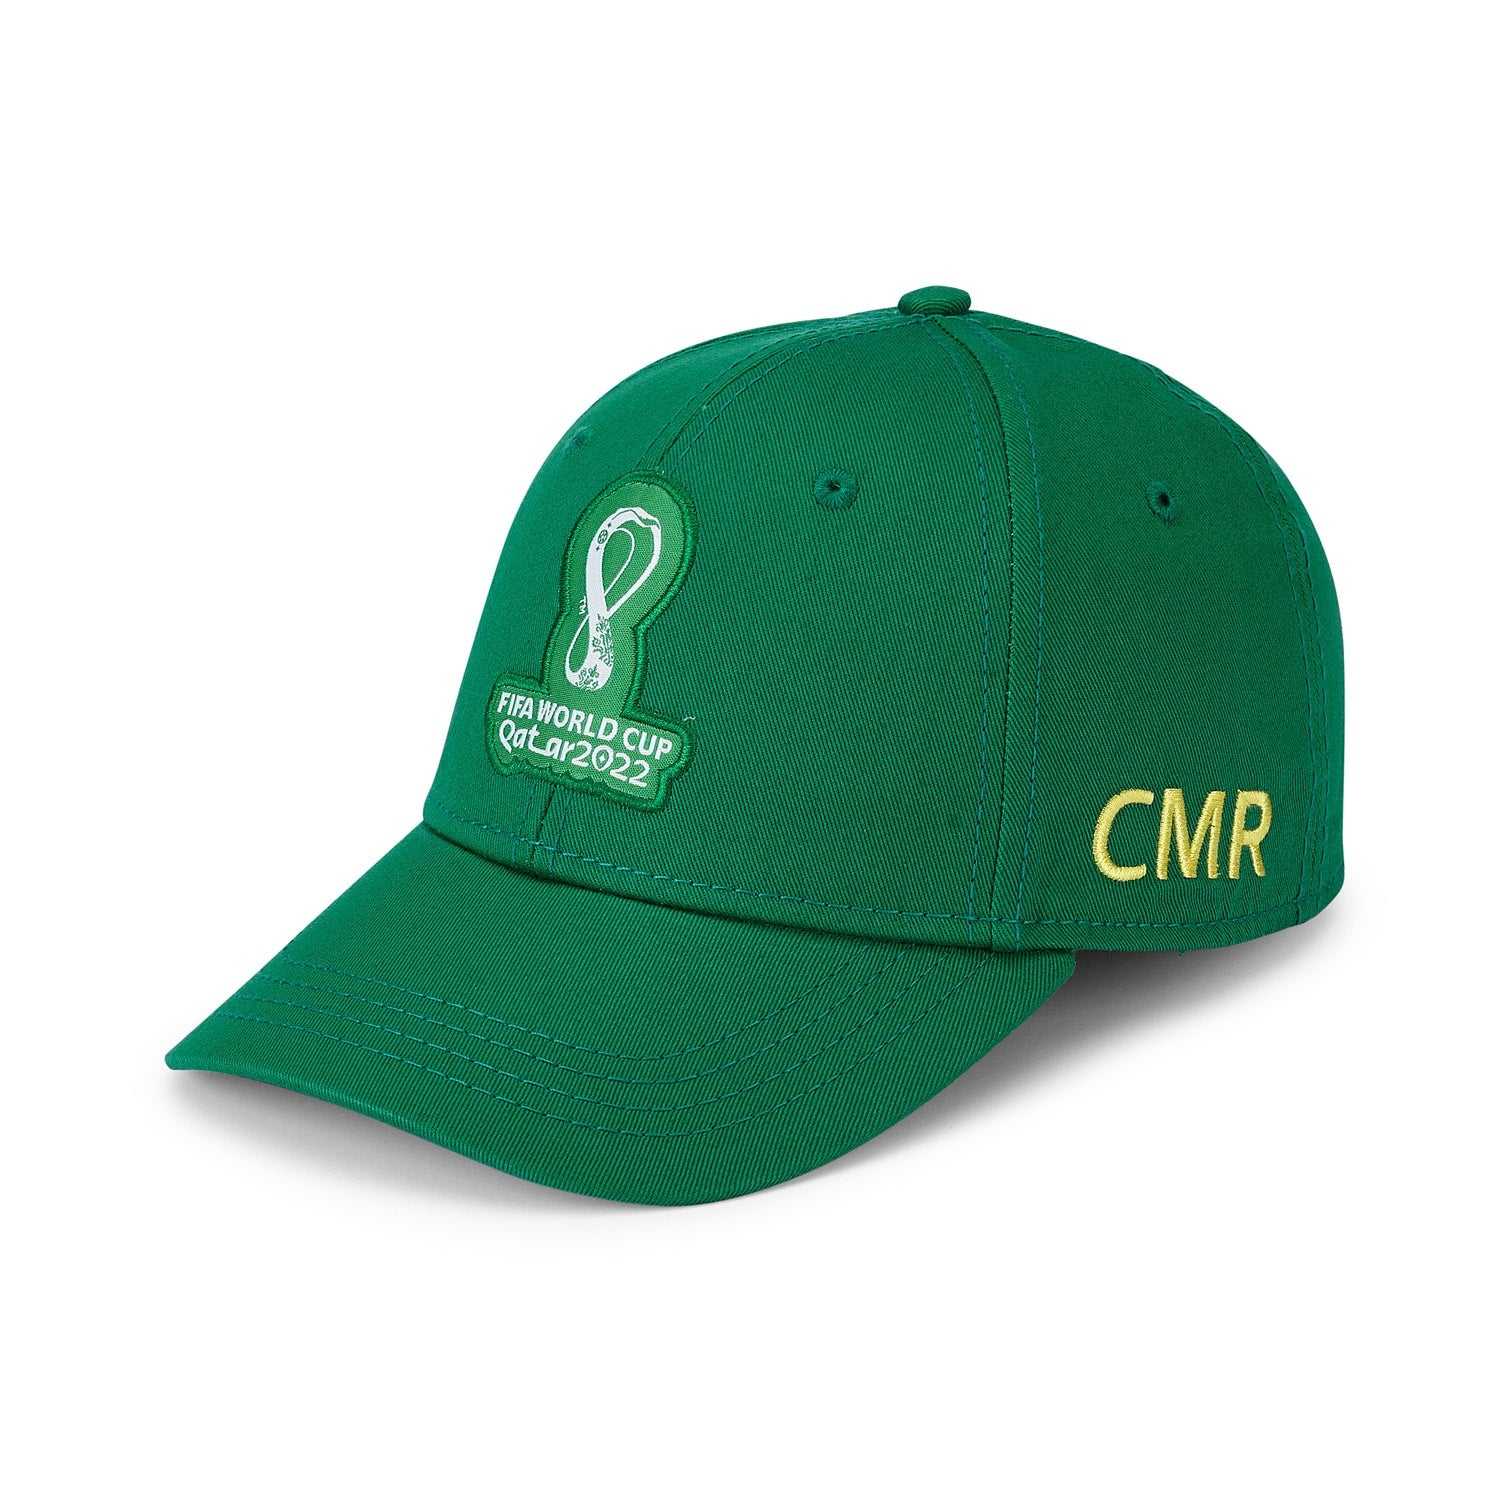 2022 World Cup Cameroon Green Cap - Mens